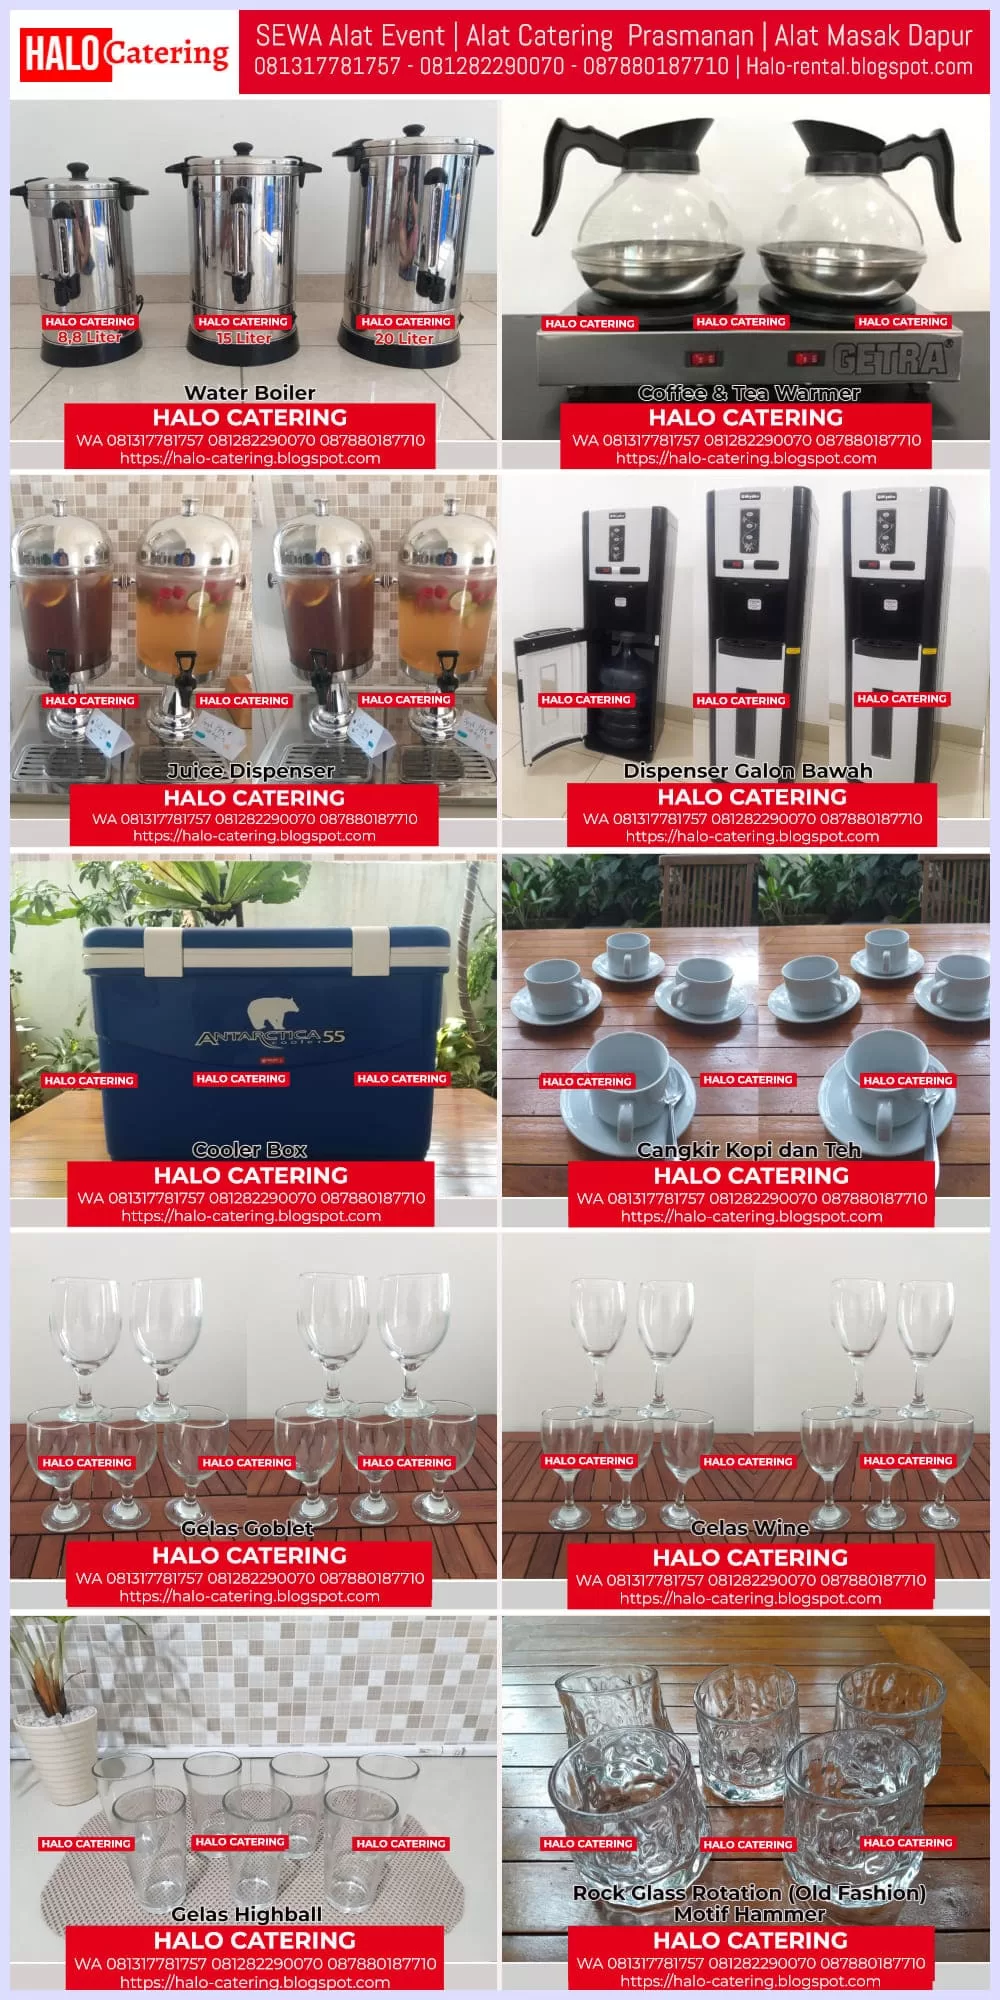 Persewaan Alat Minum Coffee Break Rental Alat Masak Dapur Sewa Peralatan Makan Penyewaan Alat Catering Prasmanan Harga Sewa Murah Terdekat Jakarta Tangerang Bekasi HALO CATERING Sewa Alat Prasmanan Jakarta Selatan